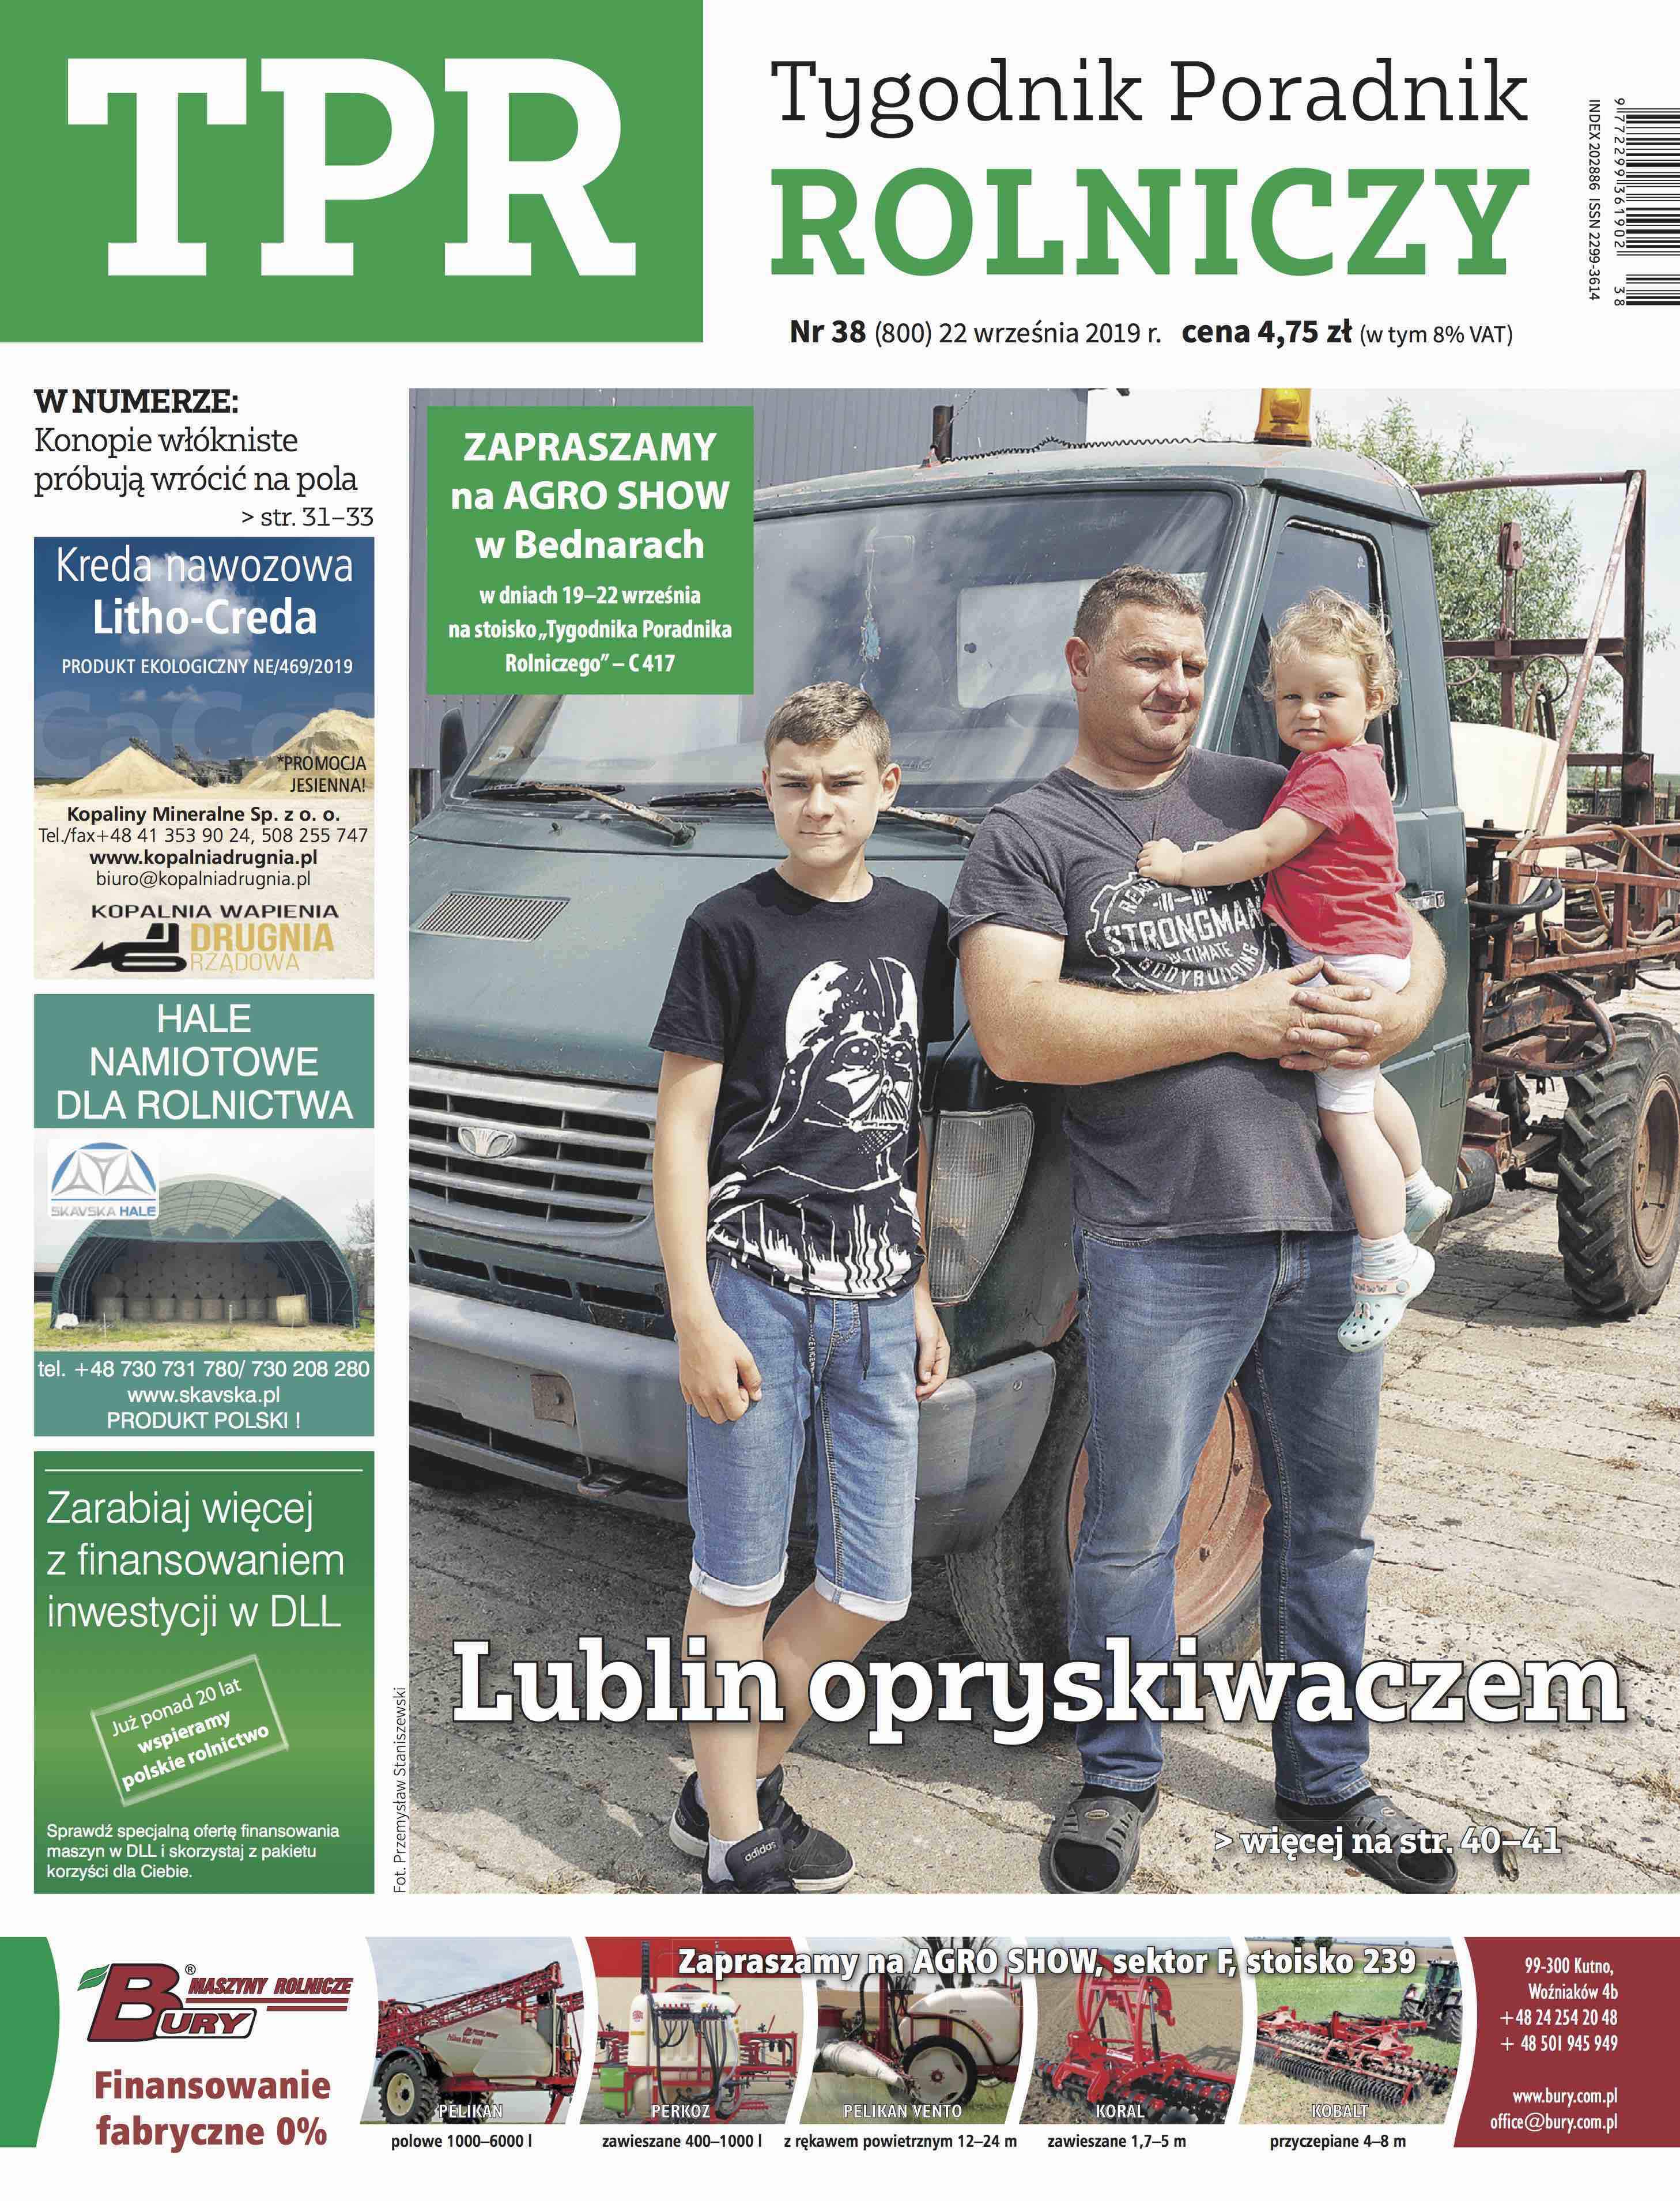 Tygodnik Poradnik Rolniczy – największa w Polsce gazeta rolnicza – zmienia swój wygląd